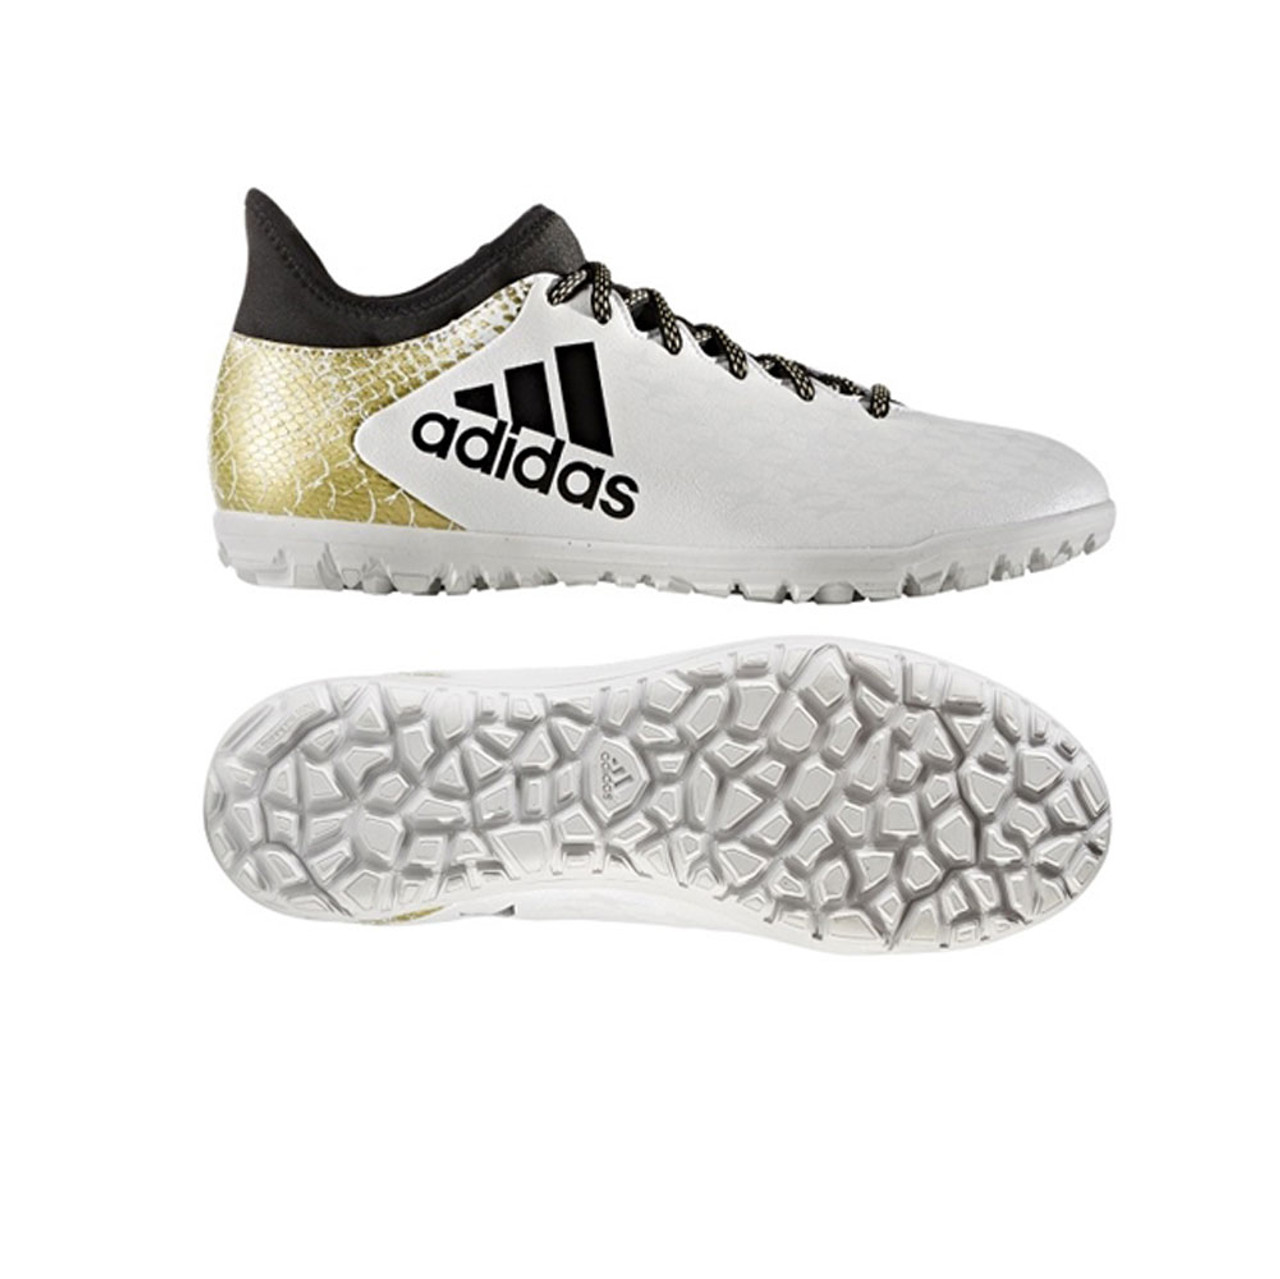 Adidas Men's X 16.3 TF Soccer Shoe - White | Discount Adidas Men's Athletic Shoes More - Shoolu.com | Shoolu.com